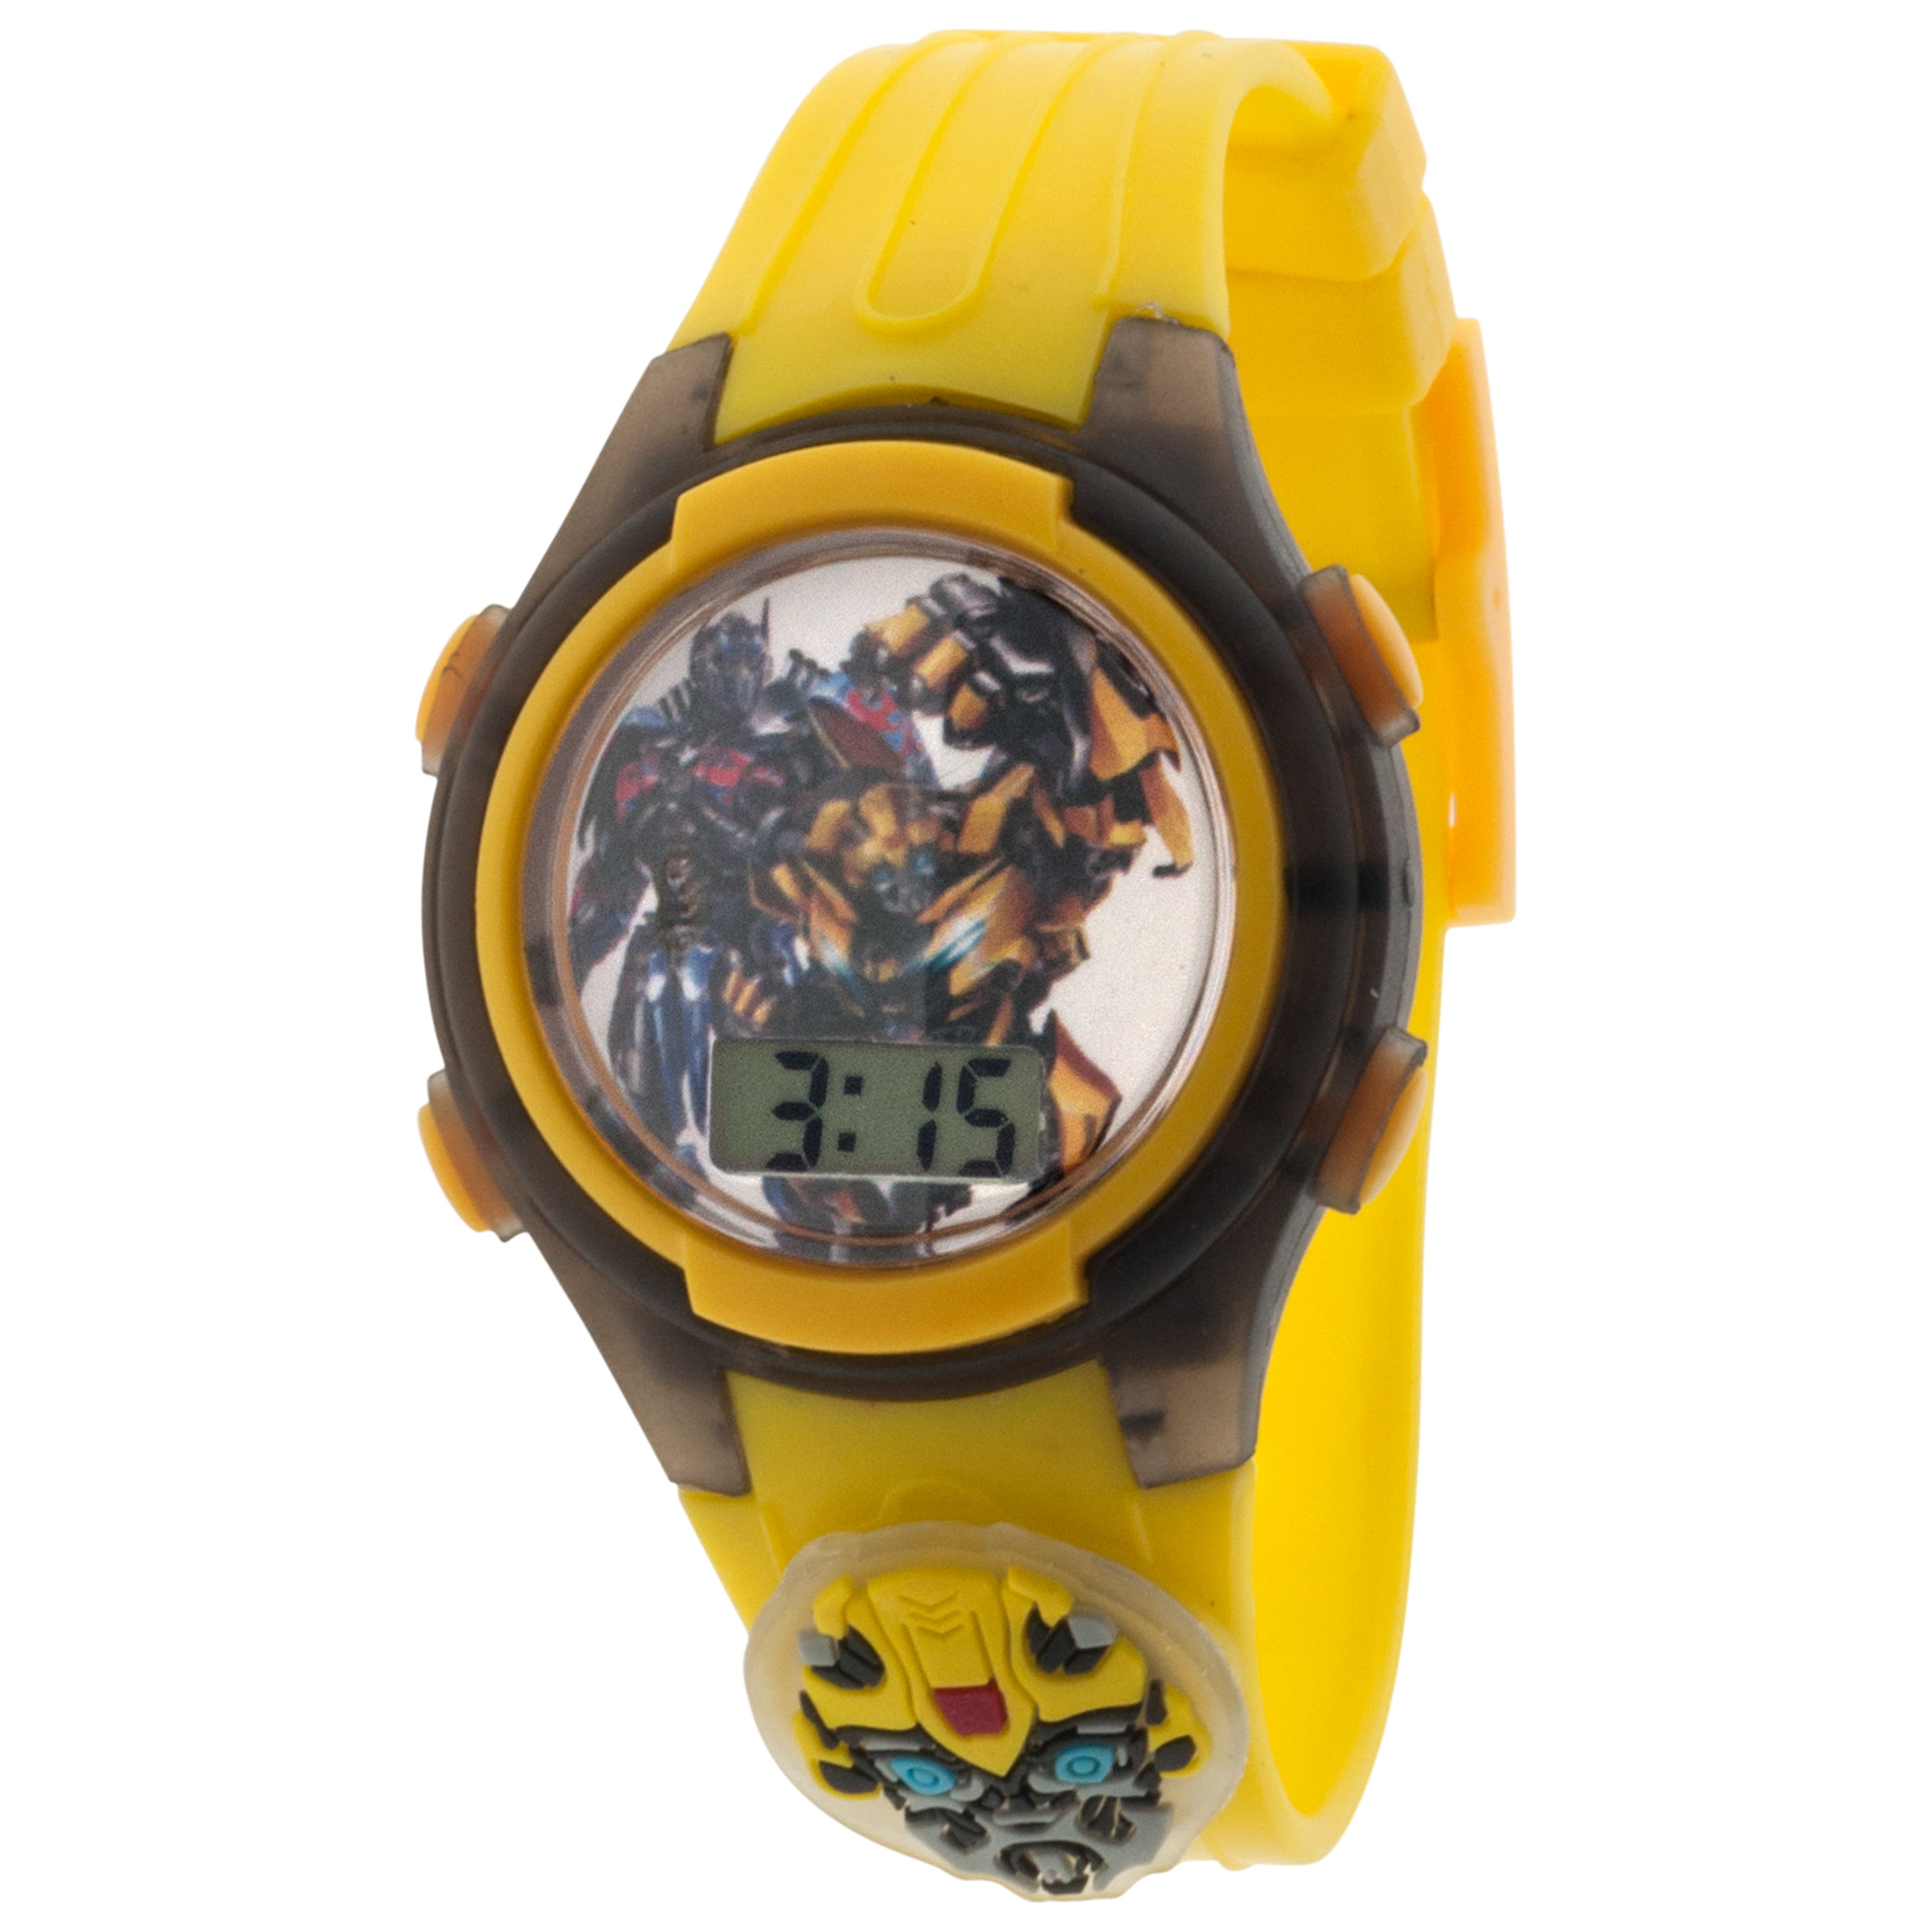 Transformer watch